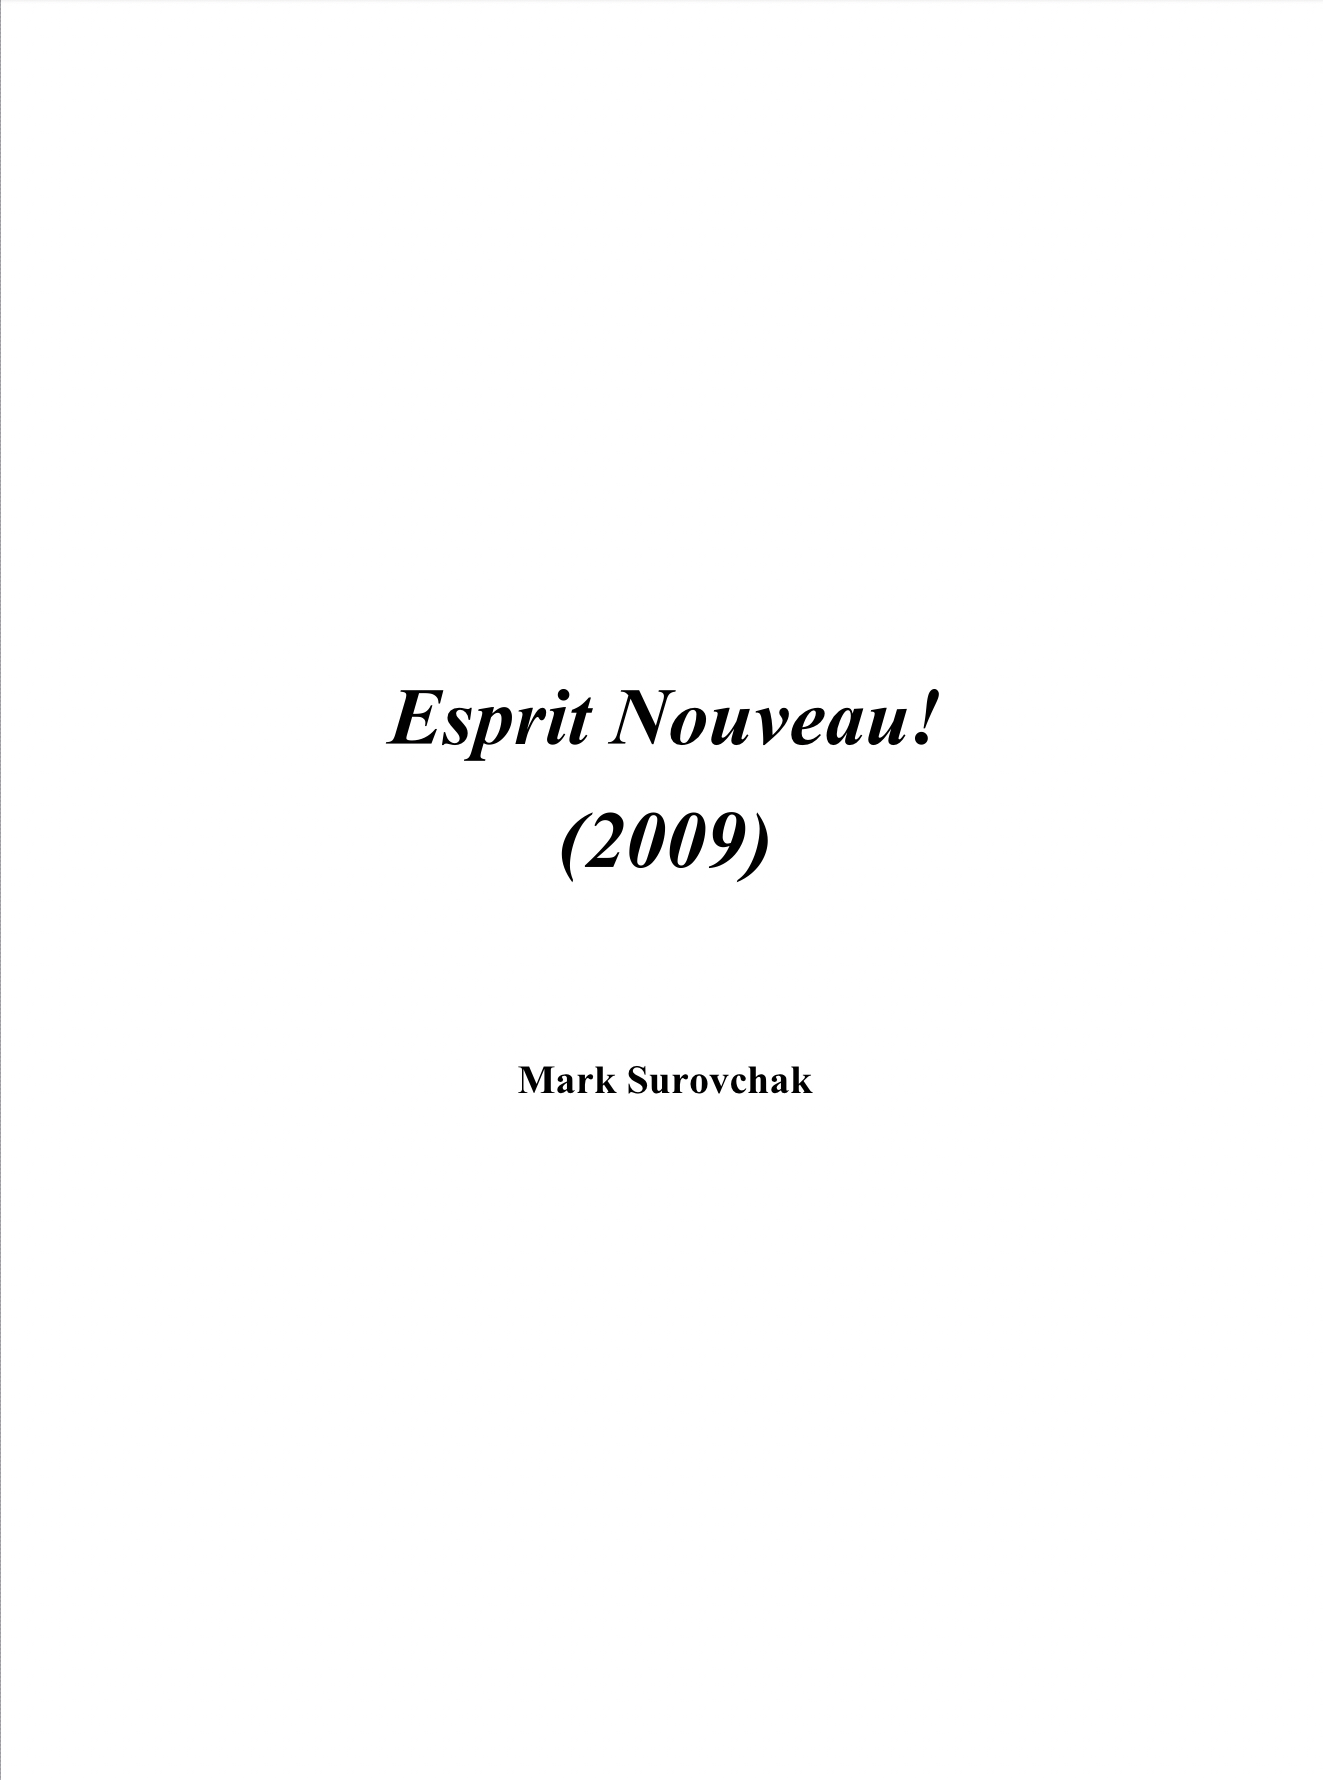 Esprit Nouveau! by Mark Surovchak